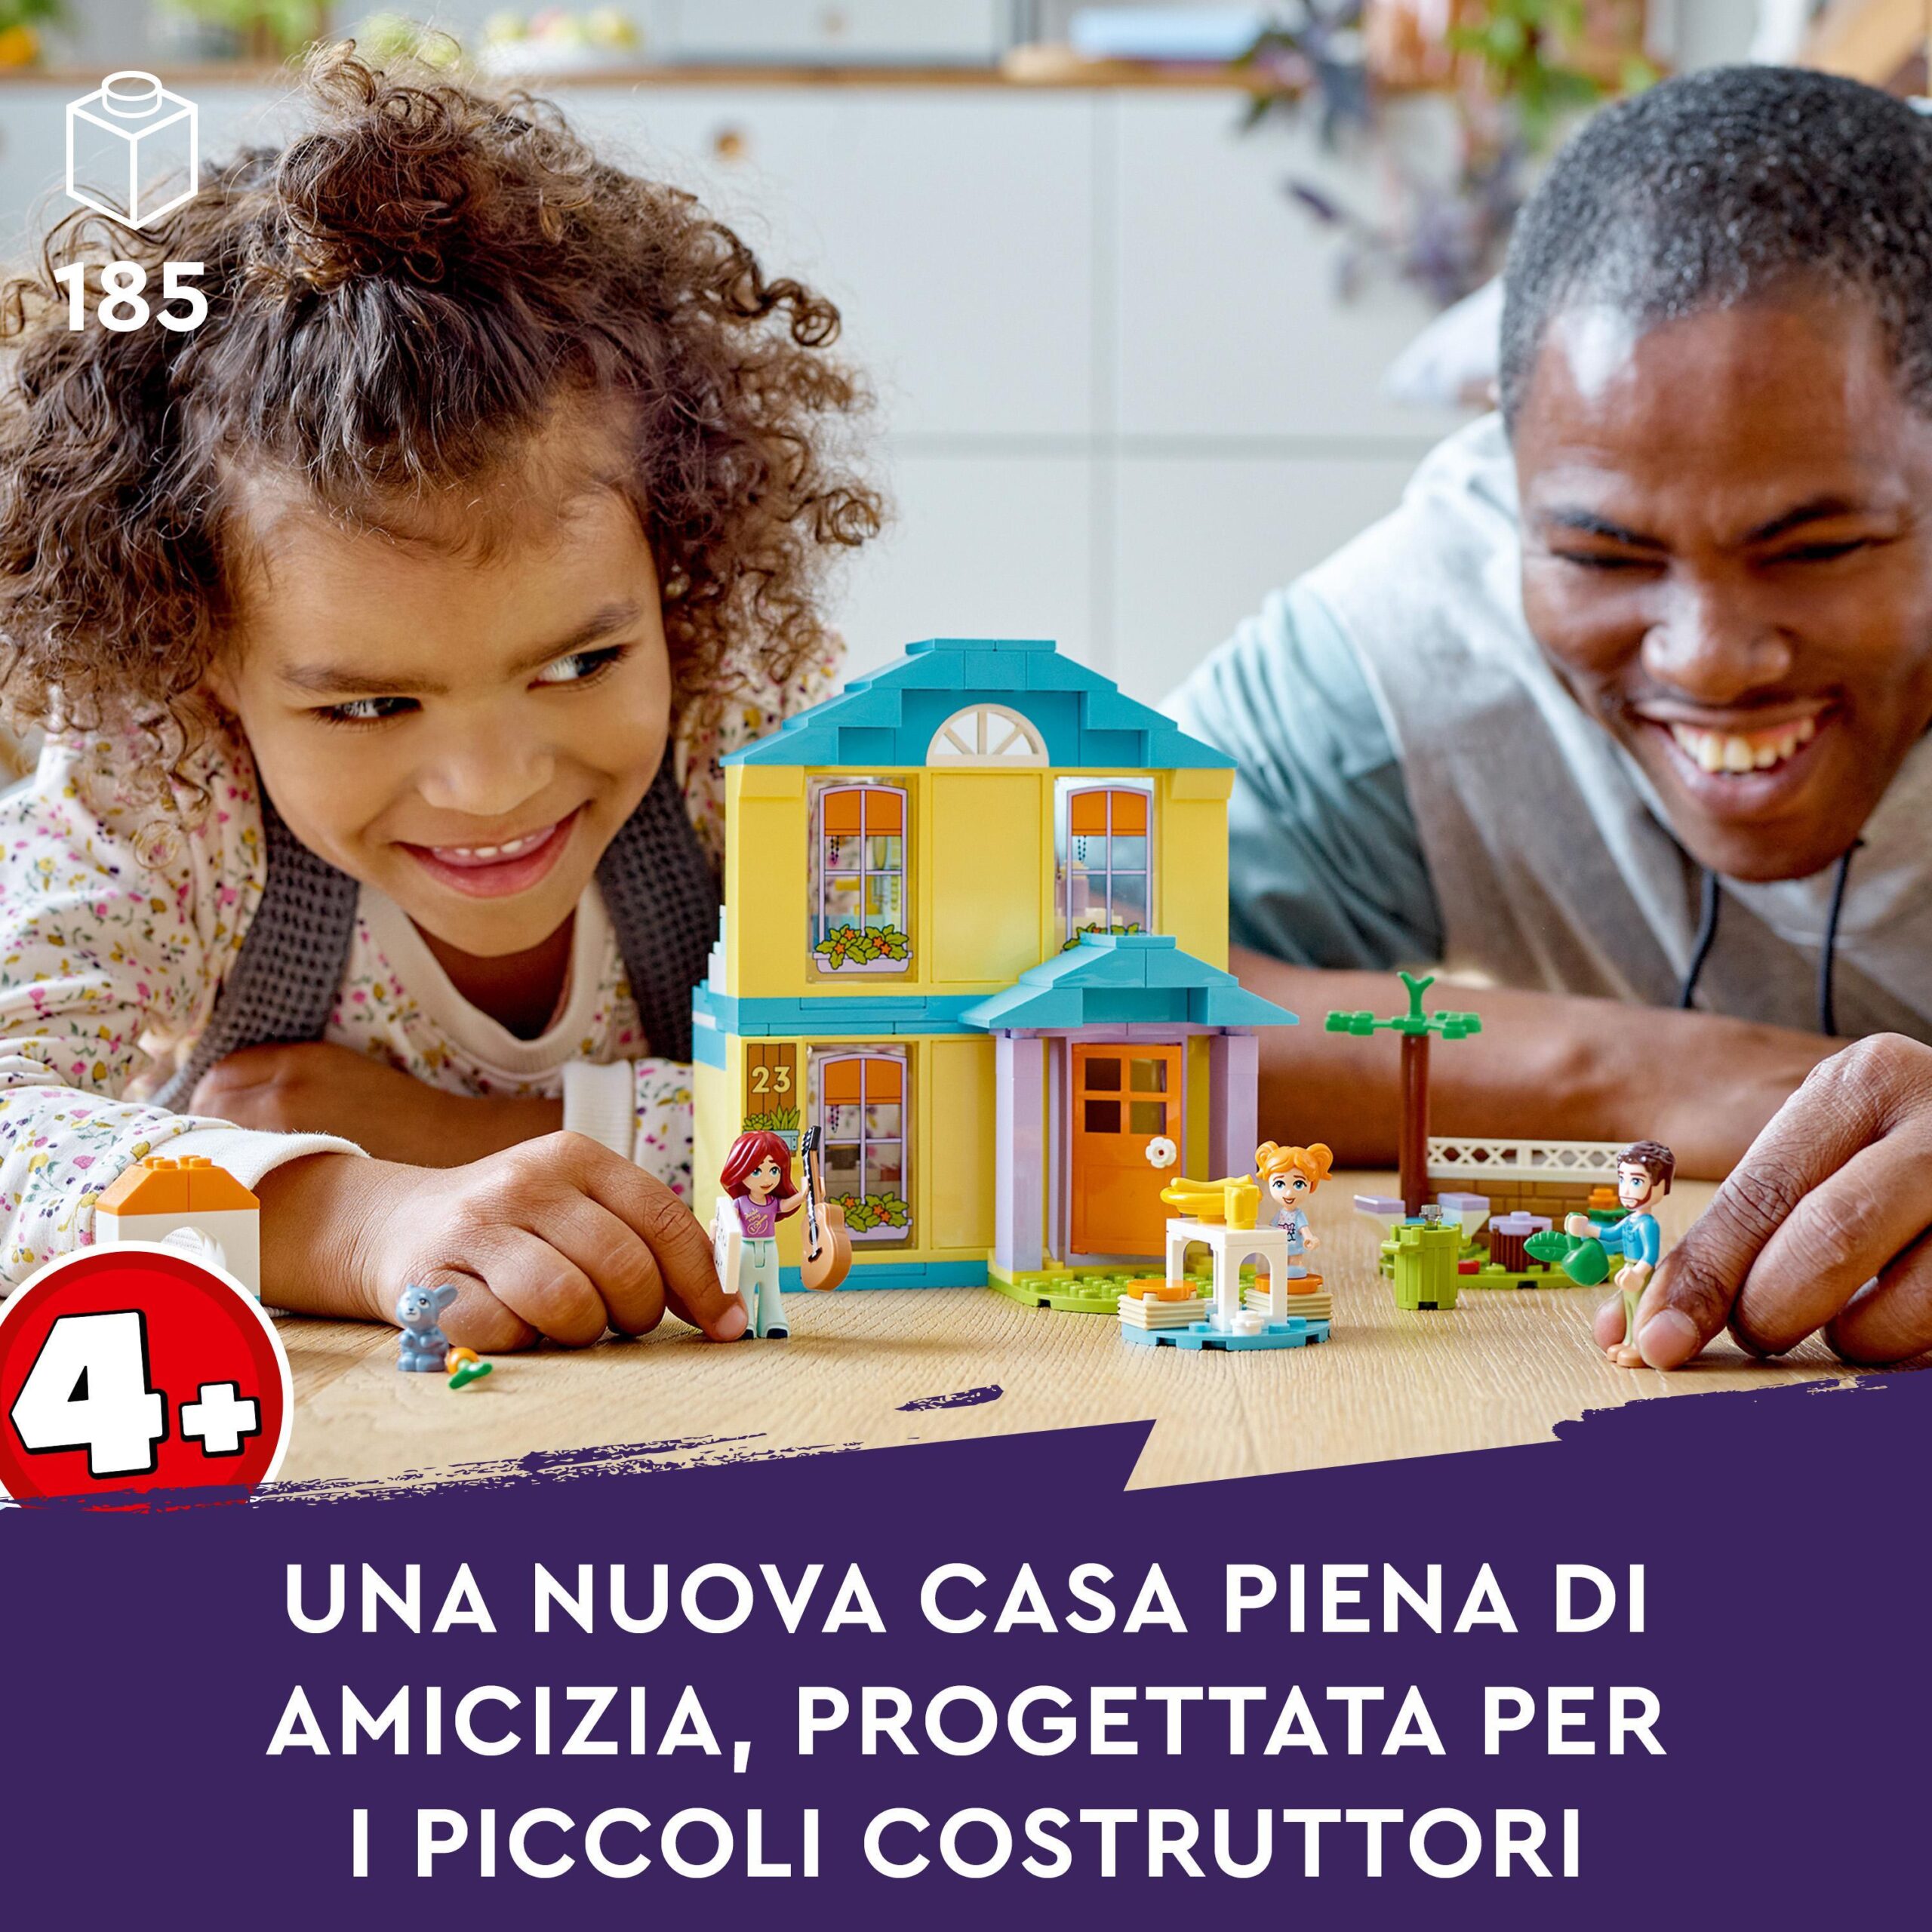 Lego friends 41724 la casa di paisley, casa delle bambole con accessori, giochi per bambina e bambino 4+ anni, idea regalo - LEGO FRIENDS